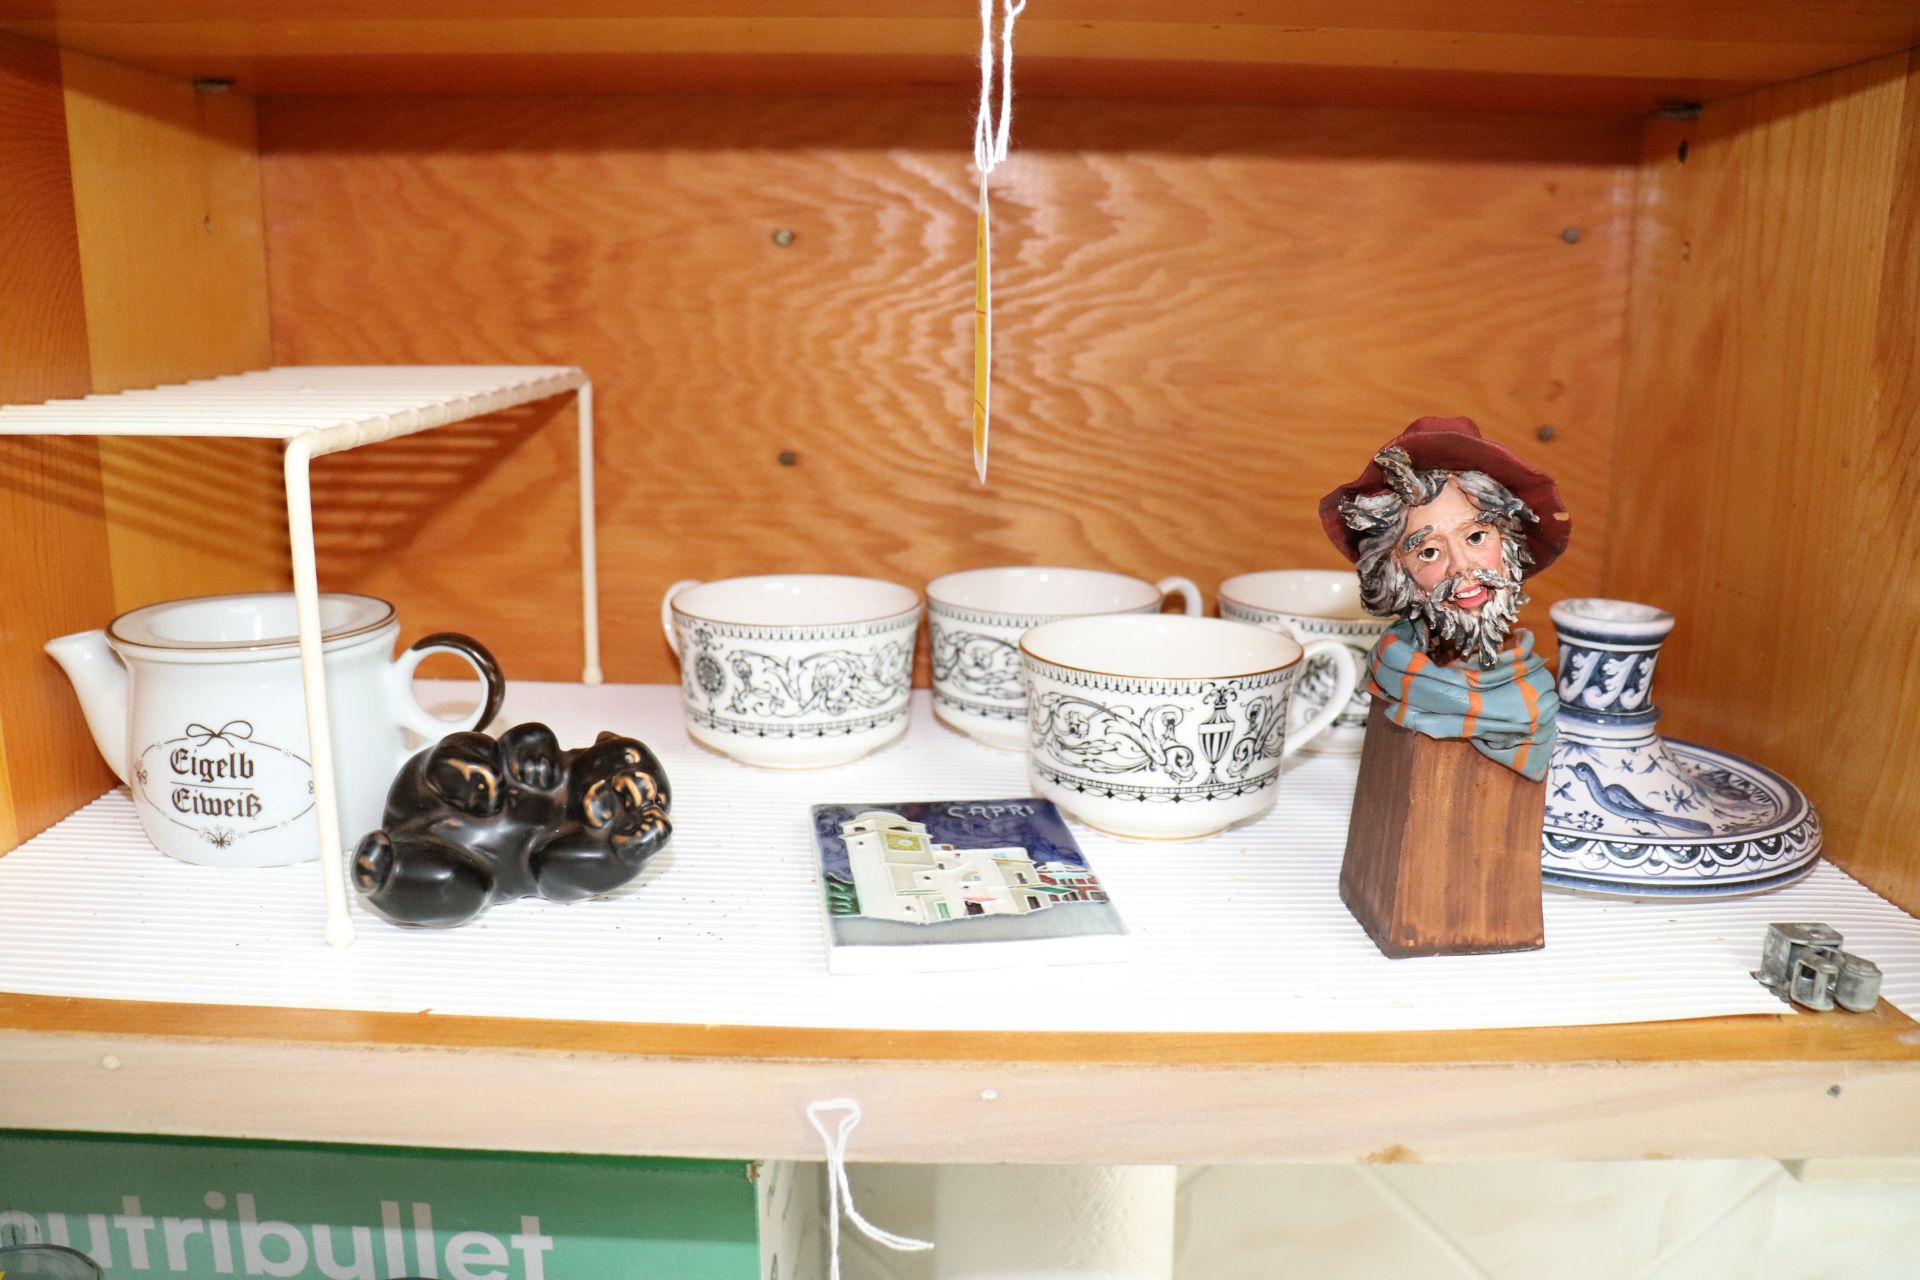 Royal Worcester teacups